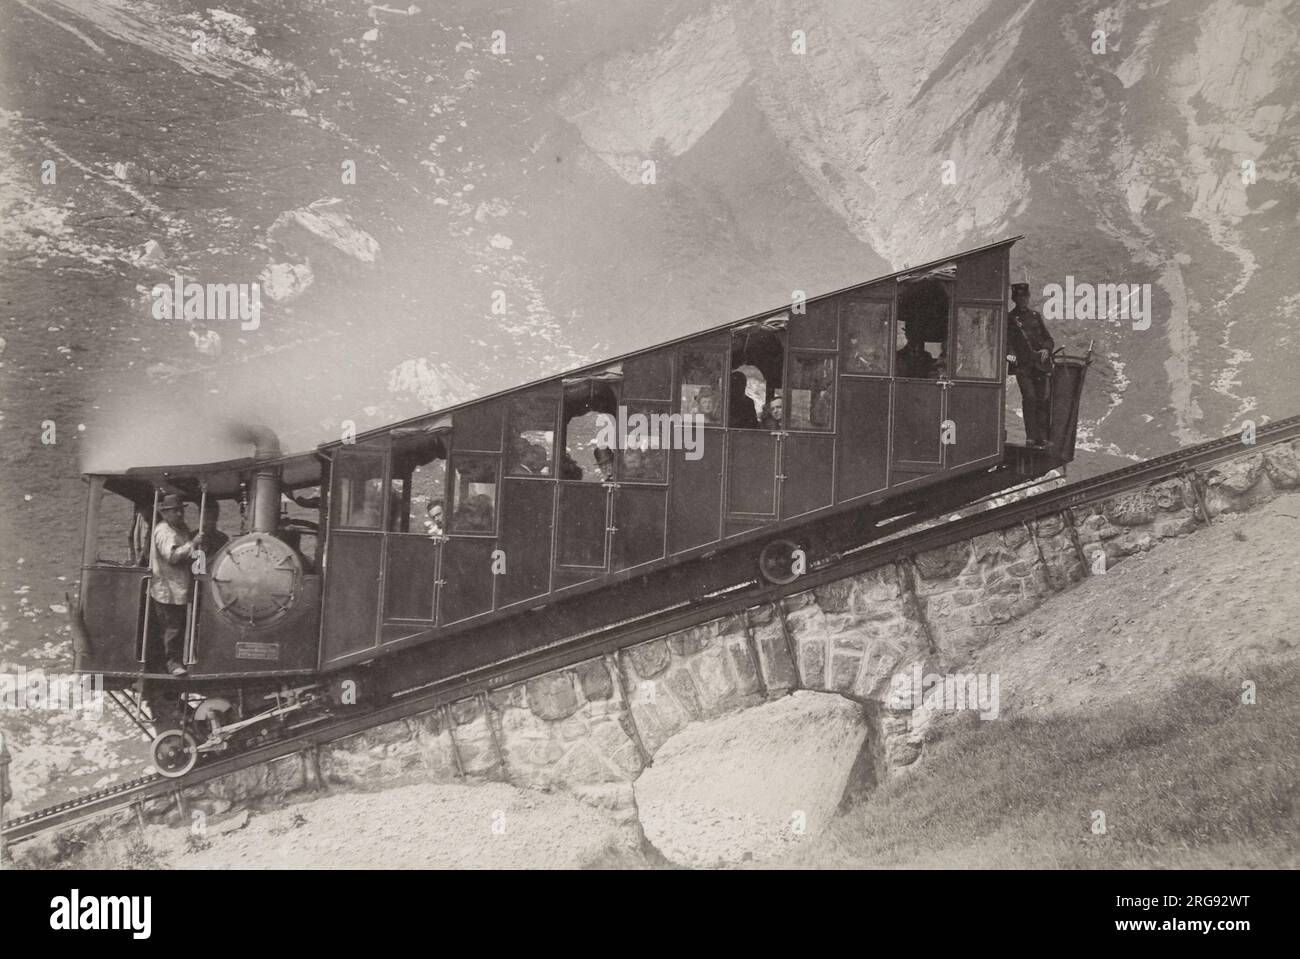 Un wagon de chemin de fer suisse à crémaillère et pignon à voie étroite, construit vers 1900, avec des conducteurs et des passagers, sur une voie en pente raide dans les Alpes. D'après les archives de Gloucester Coach and Wagon Works au Gloucester Record Office. Banque D'Images